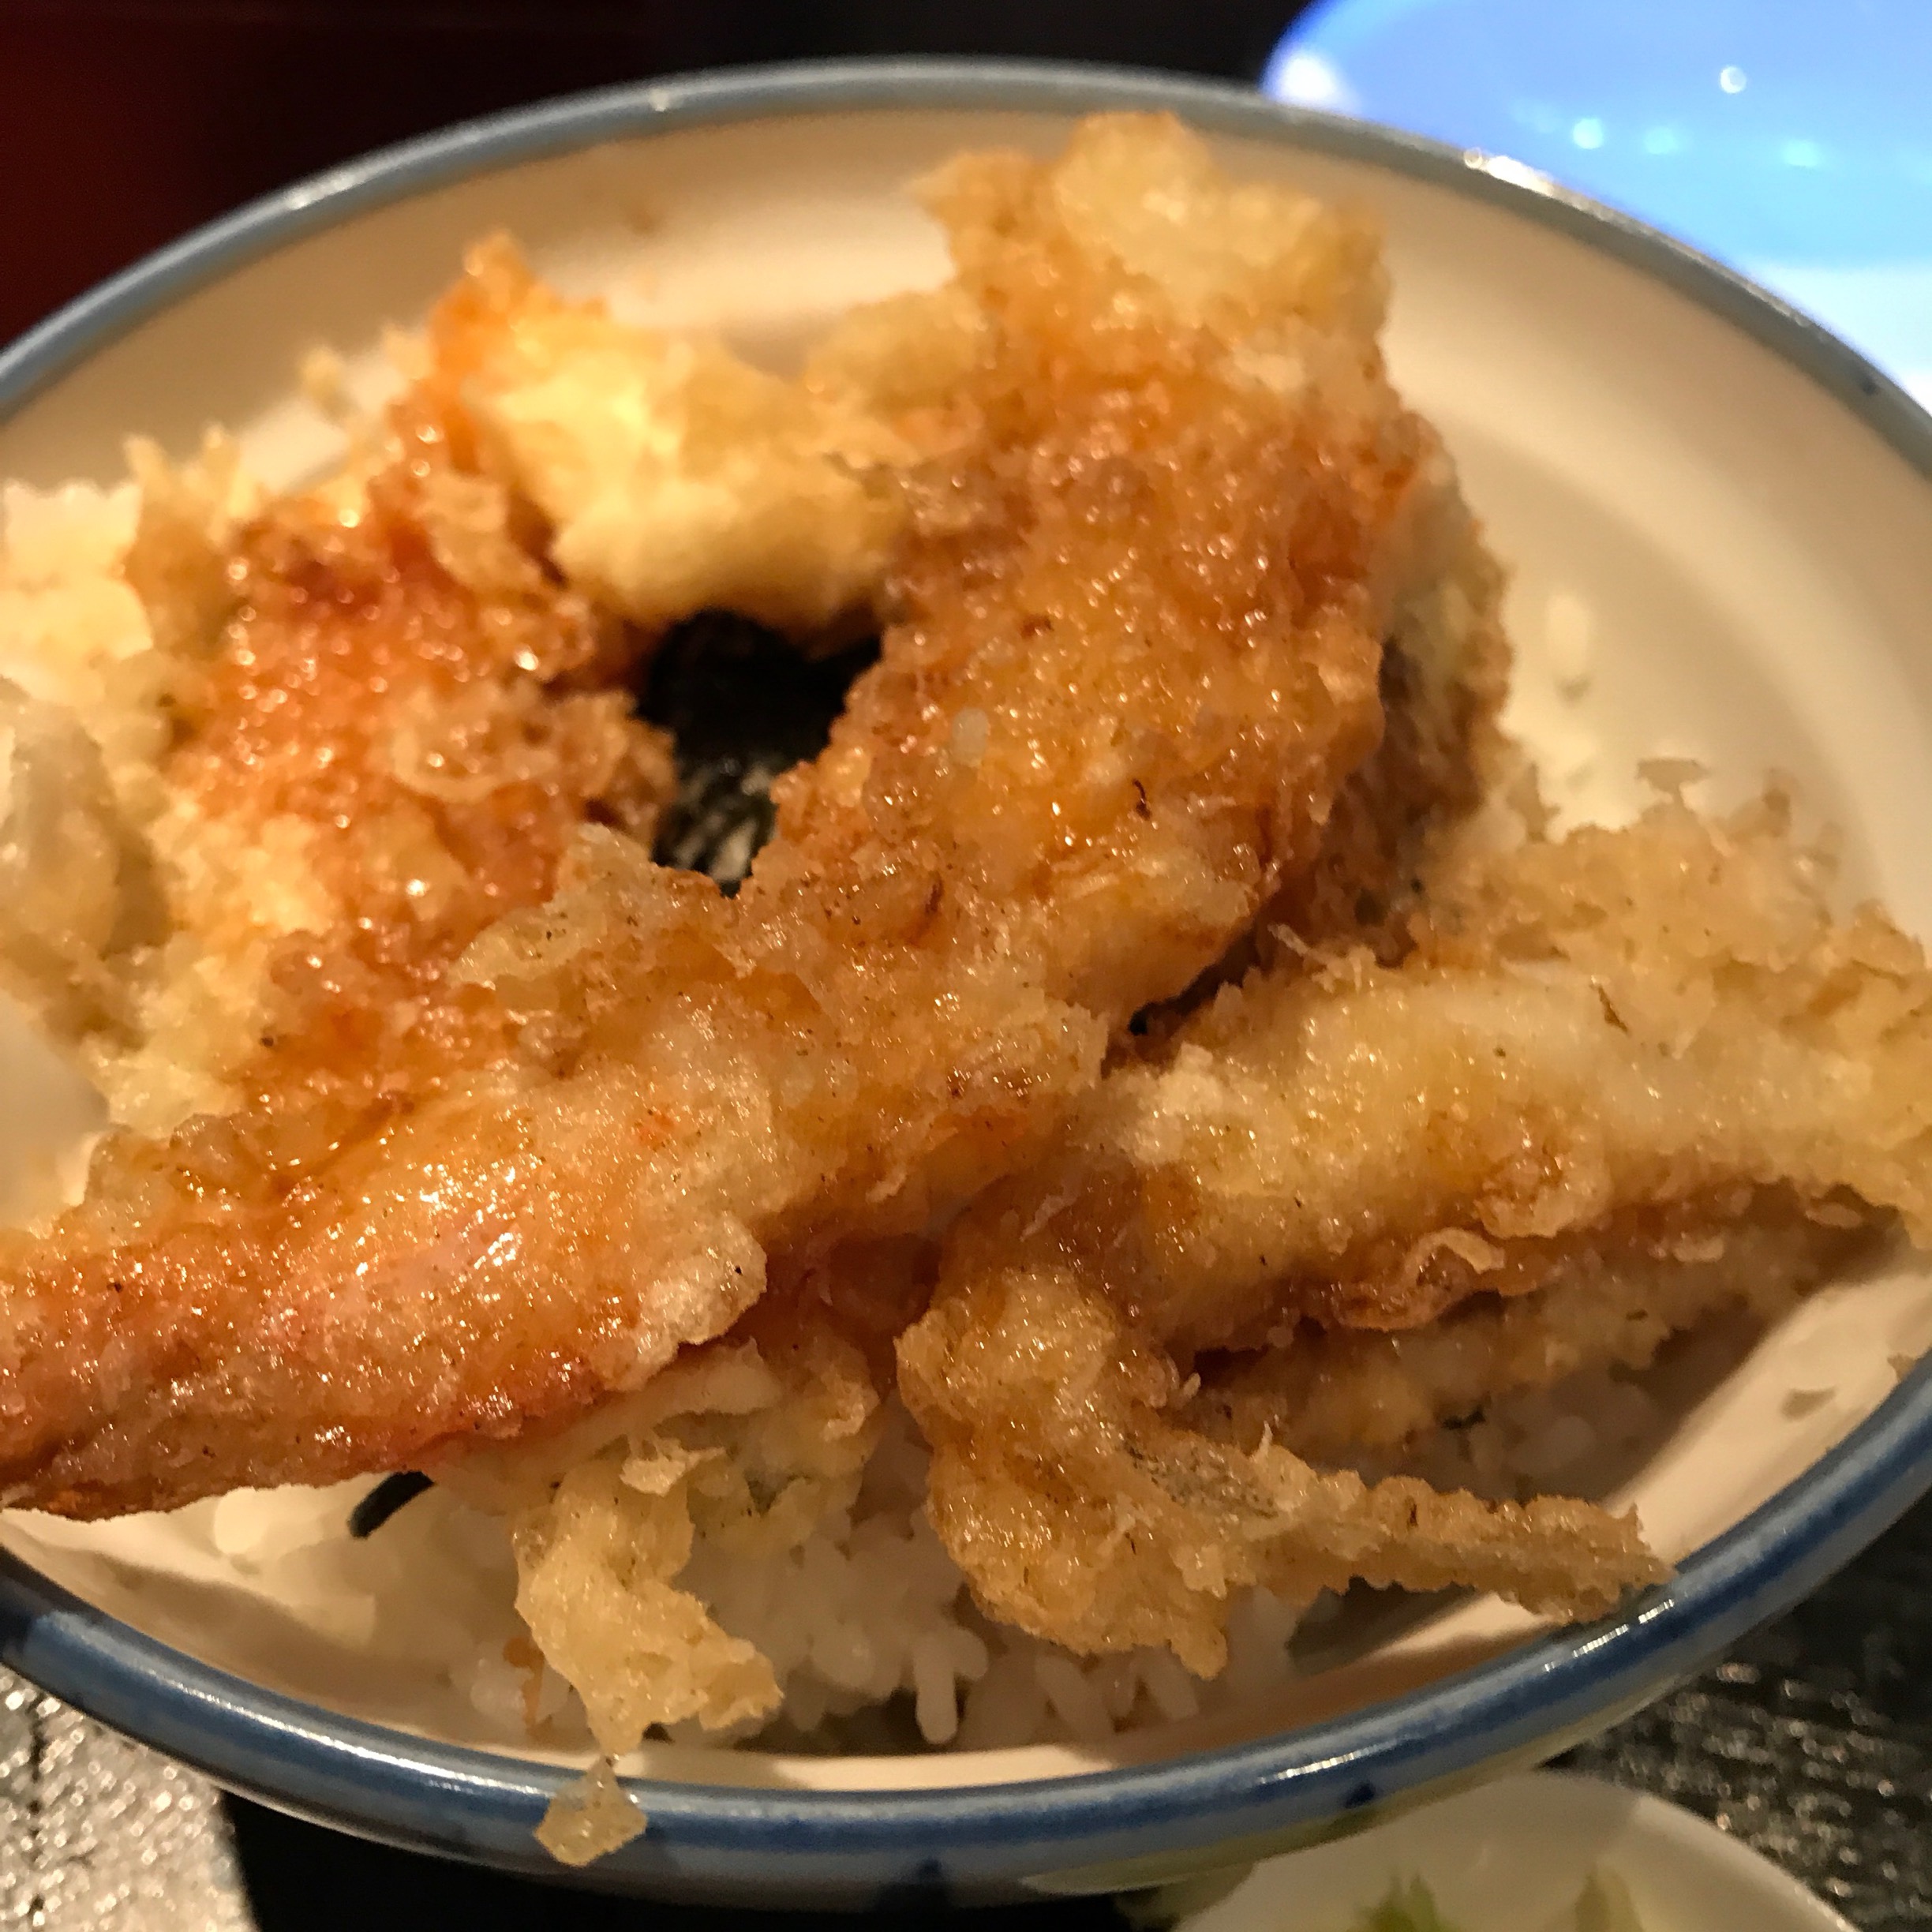 六本木 駄菓子屋 で 天丼 揚げたて天ぷらの天丼が660円 大盛りも無料 ちえの 池袋線 呑みすぎブログ